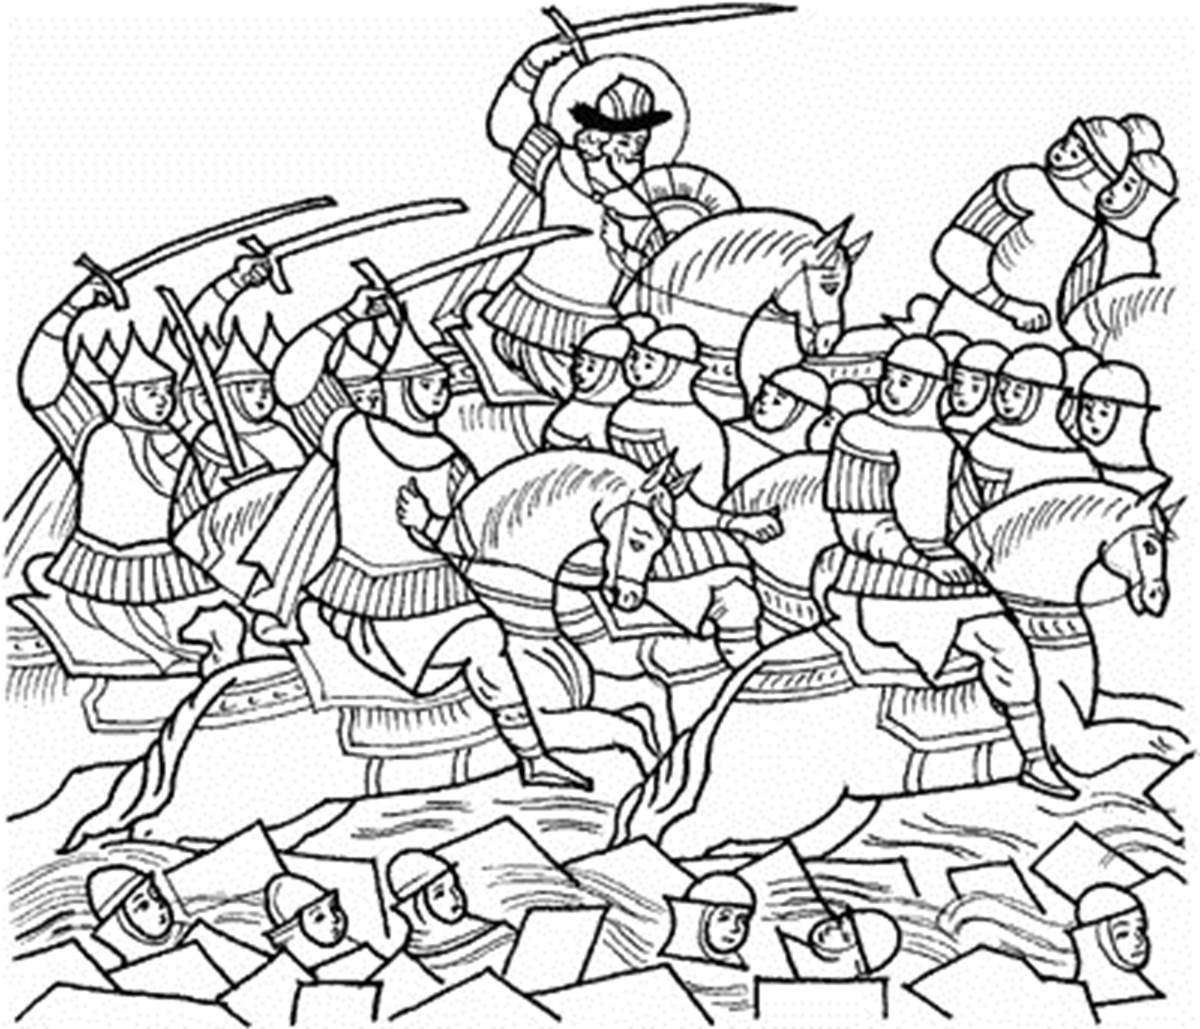 Рисунок эпизода куликовской битвы